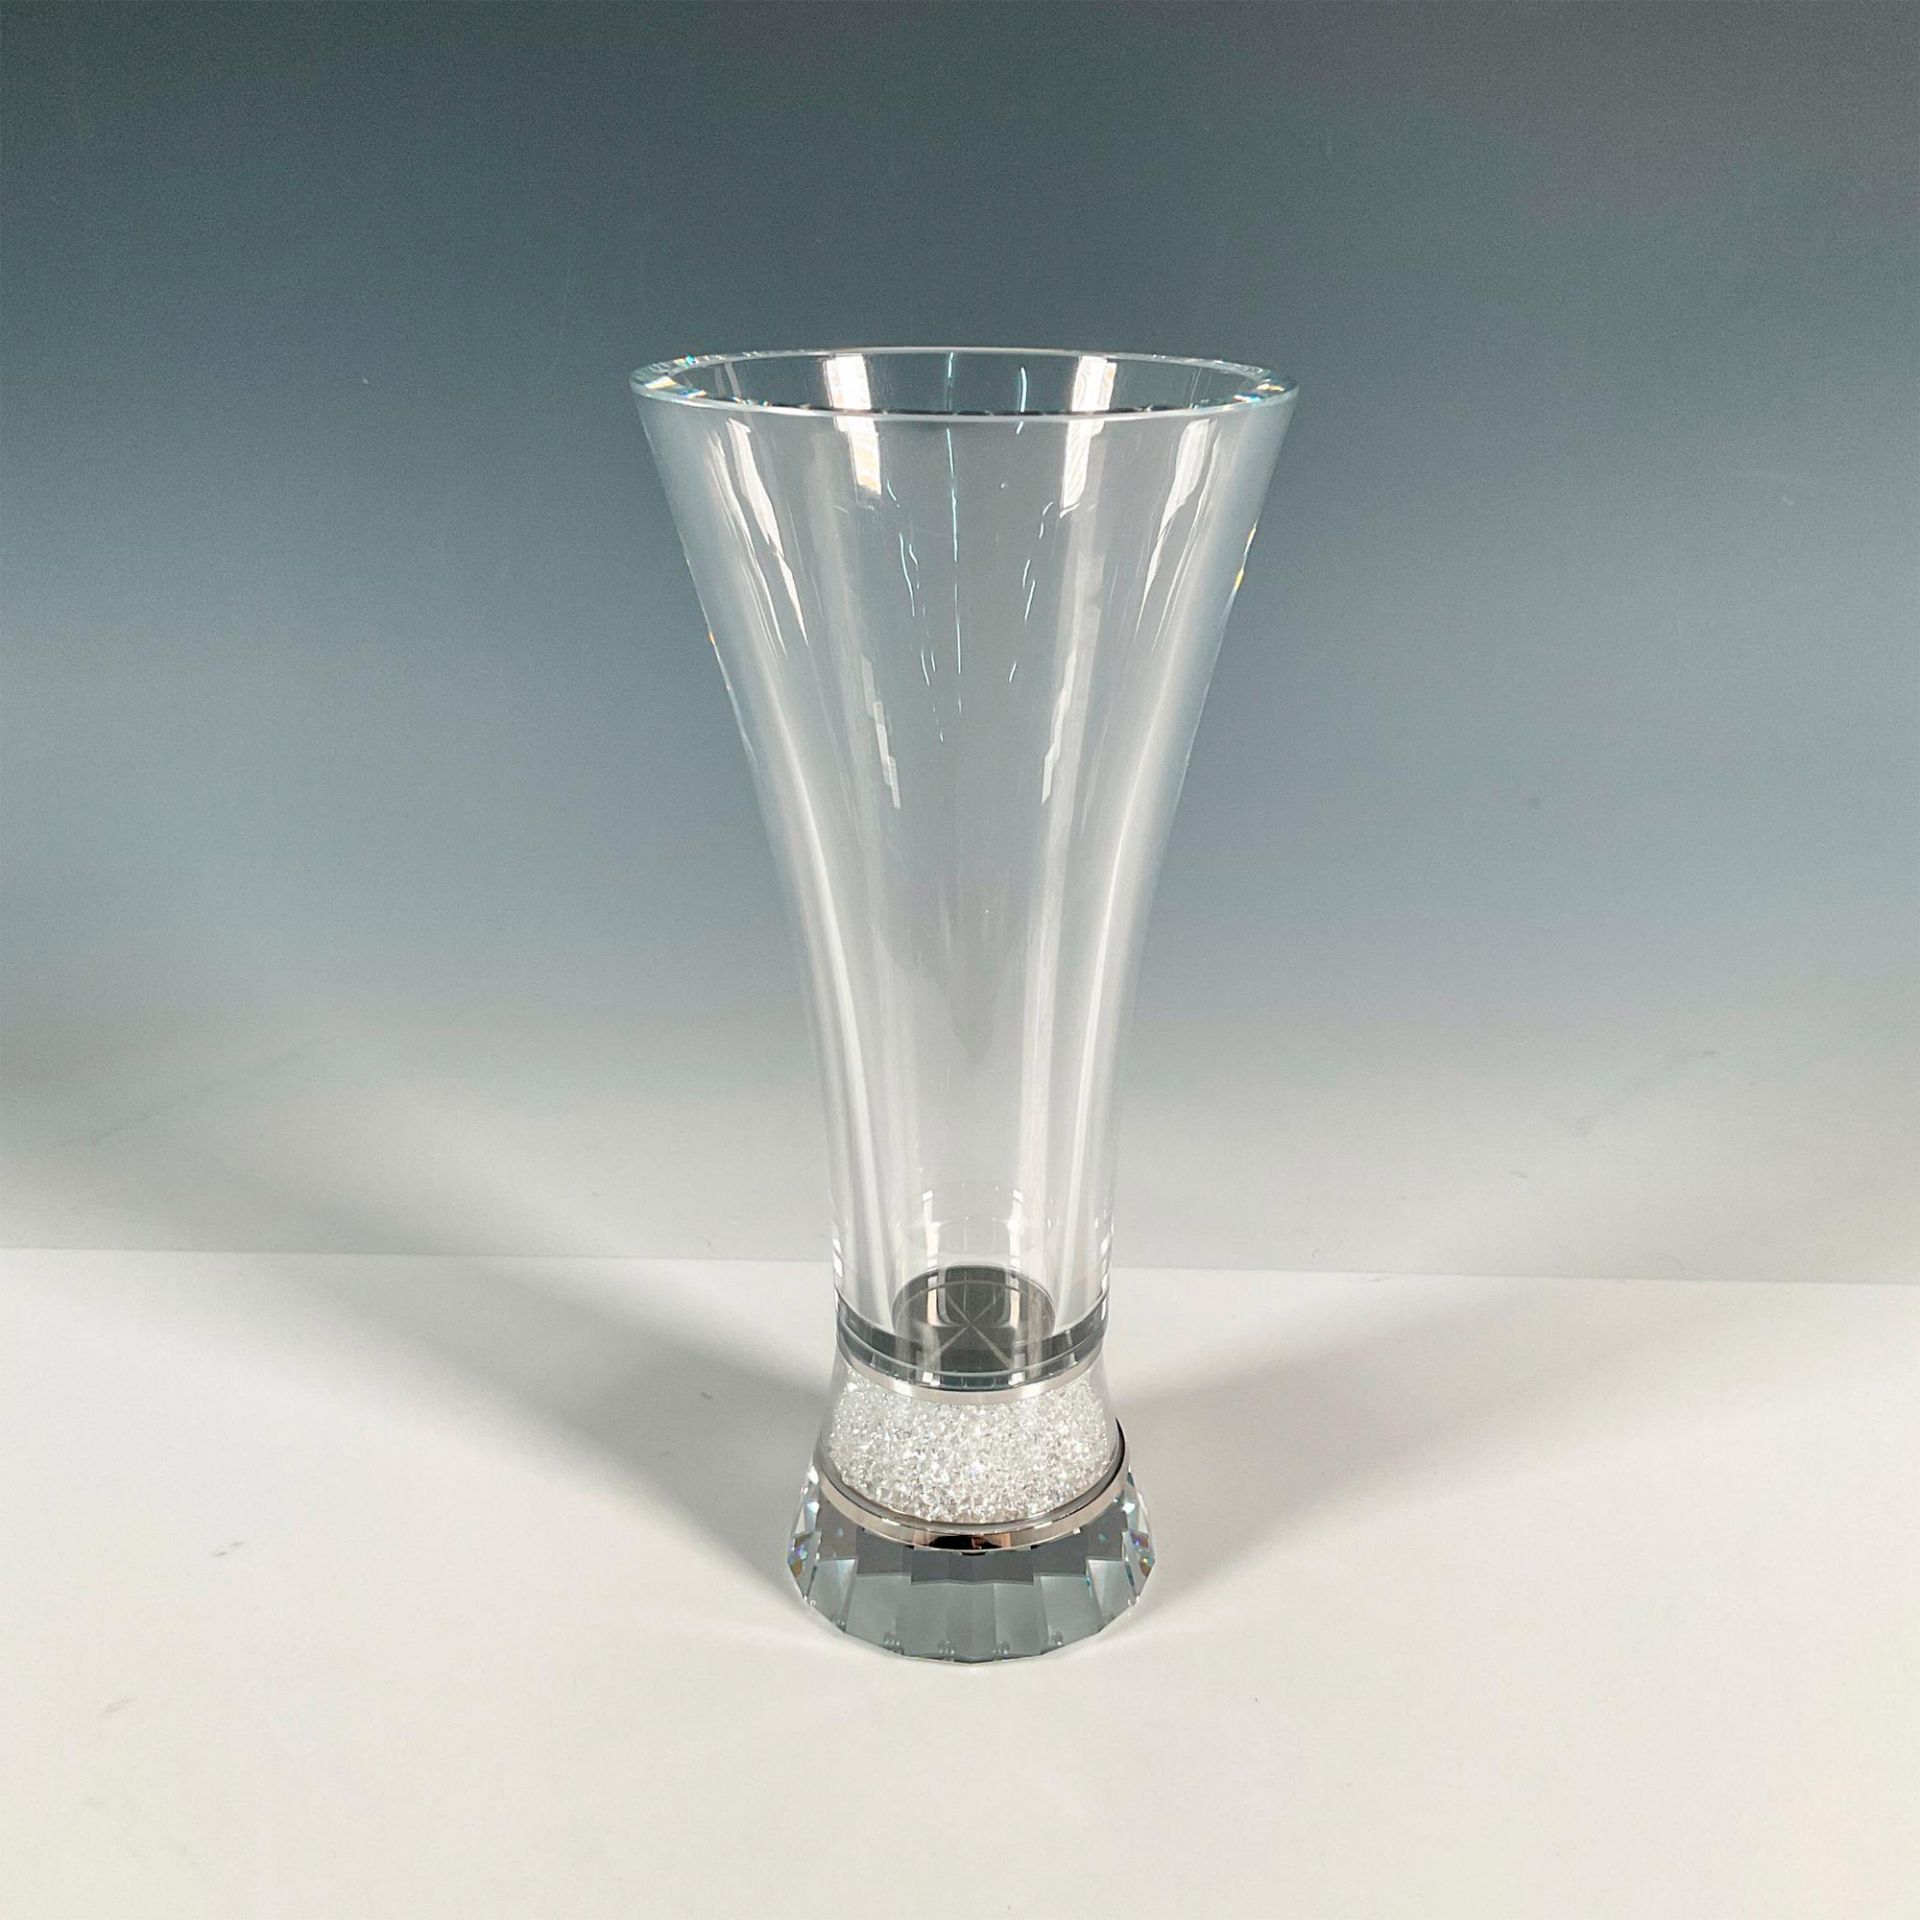 Swarovski Crystal Vase, Crystalline - Image 2 of 4